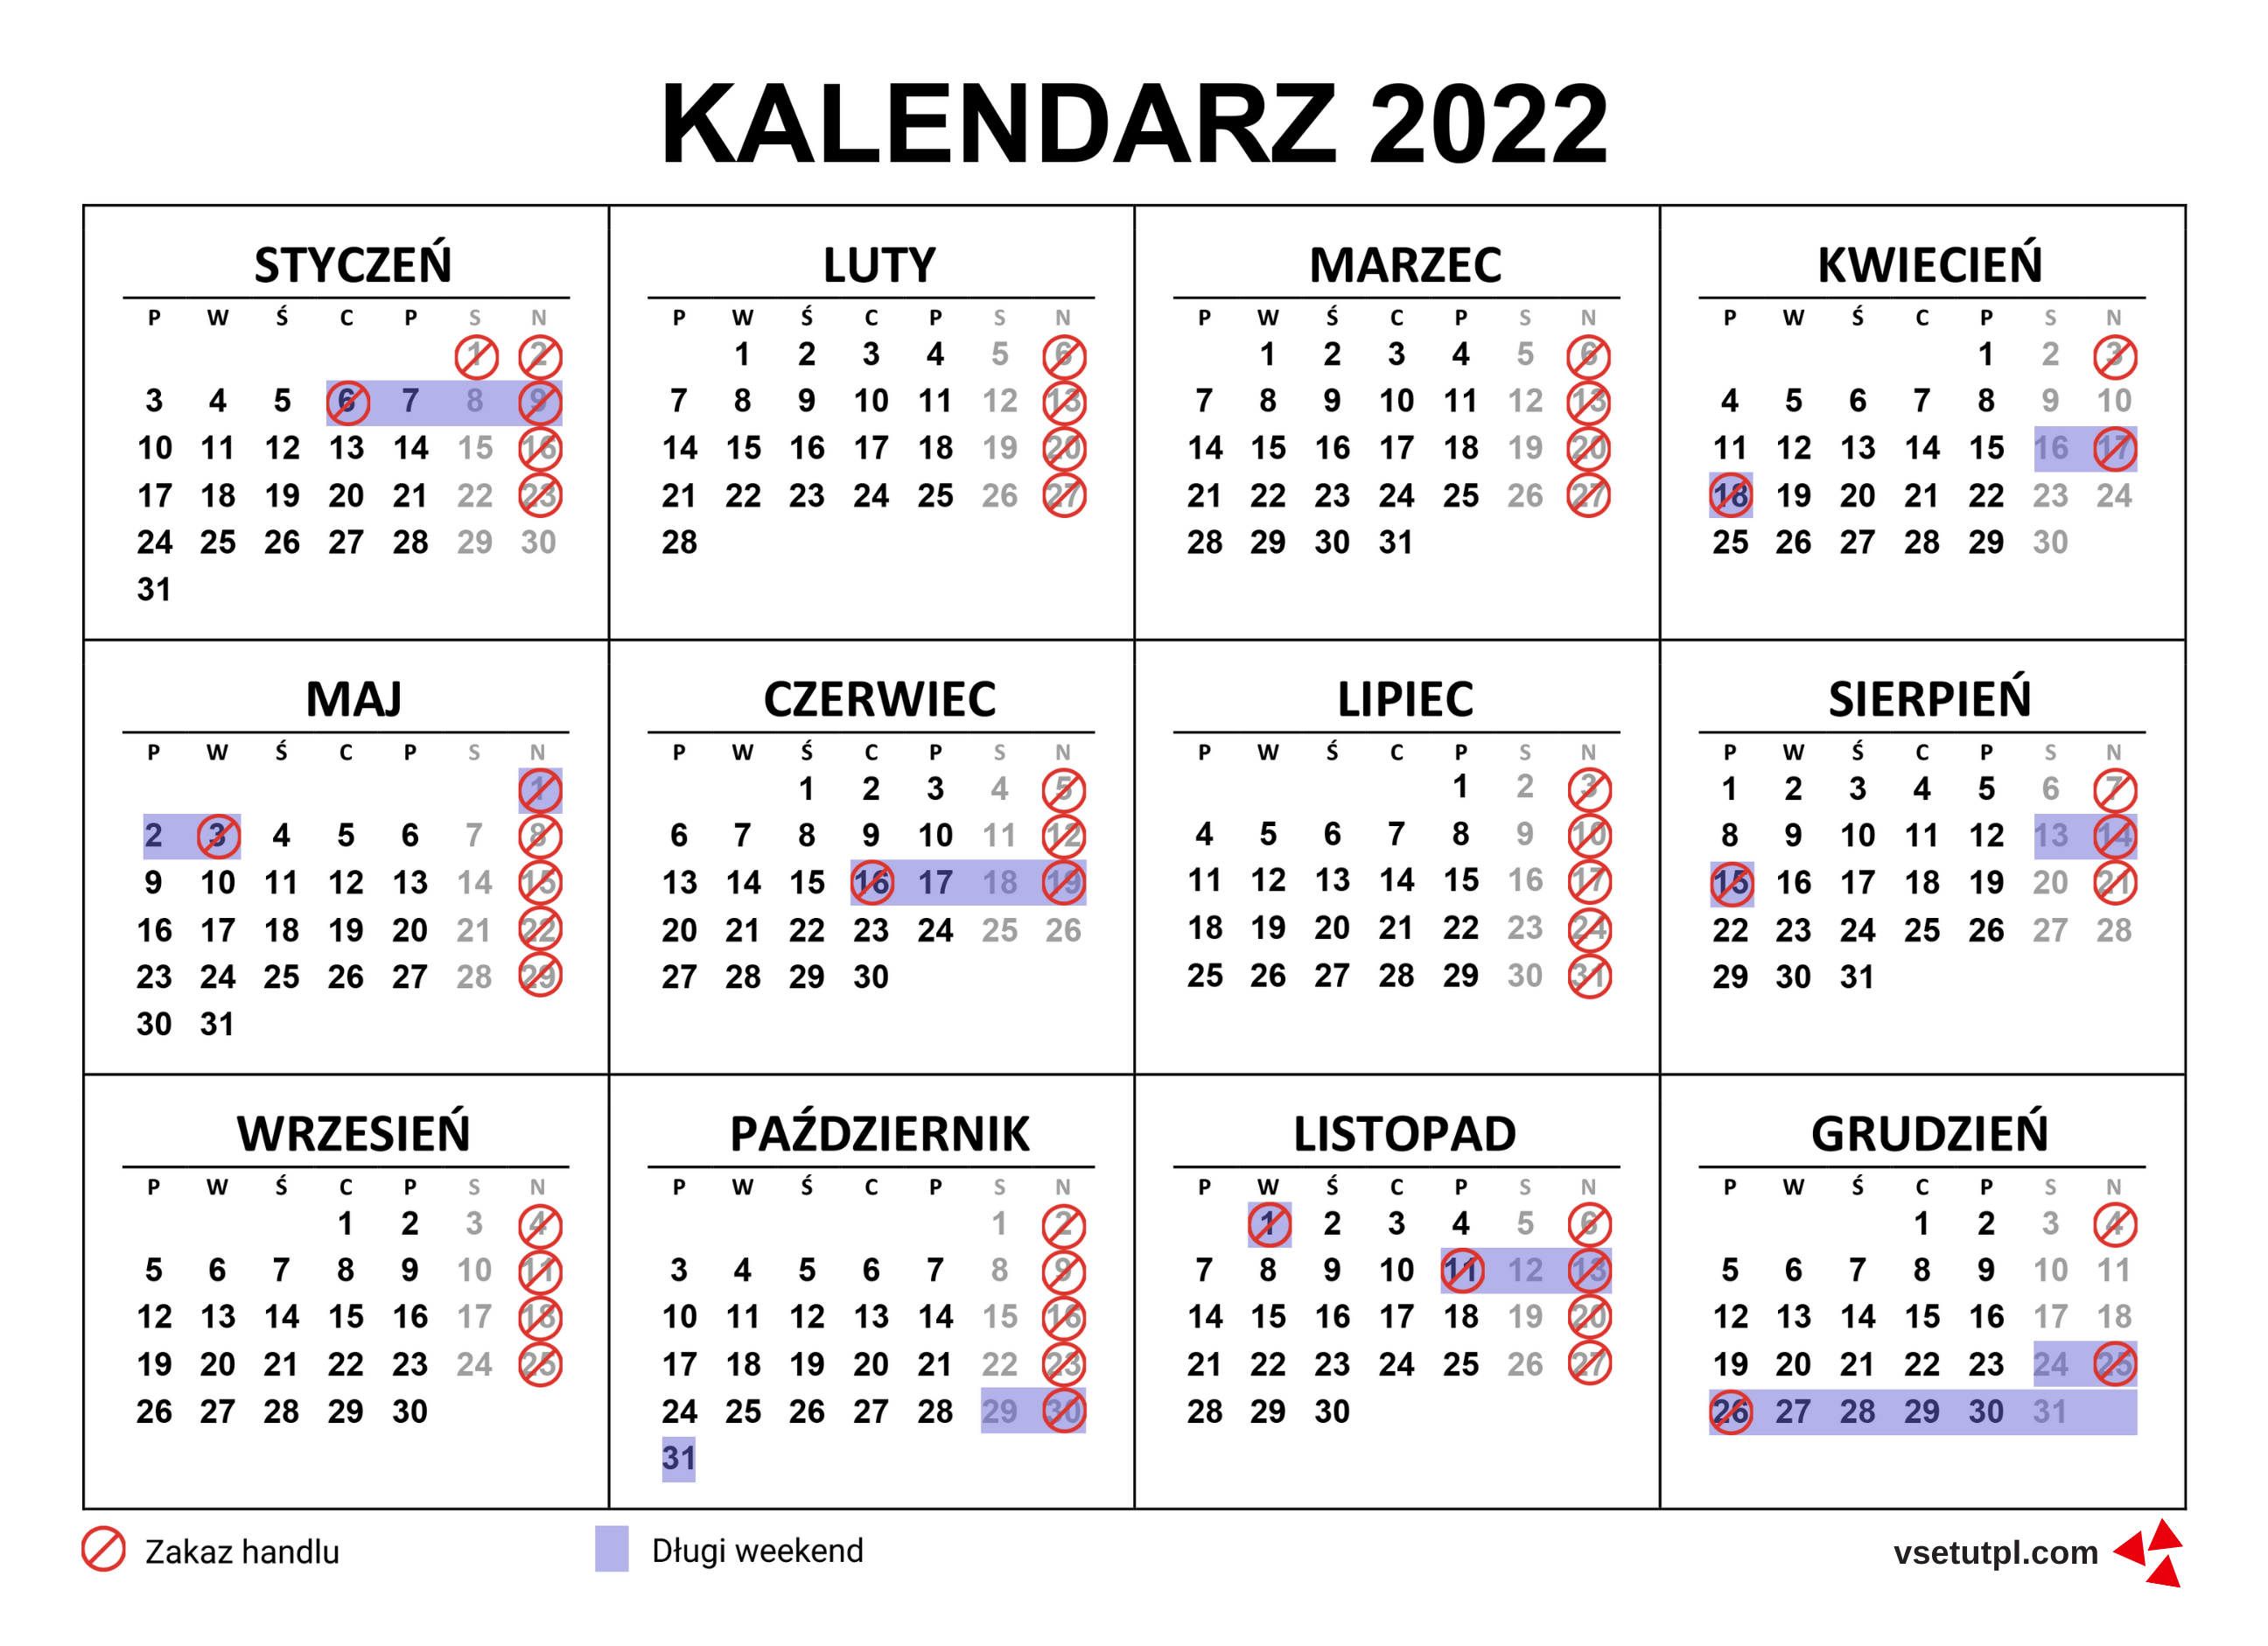 довгі вихідні та неторгові неділі в польщі 2022 календар